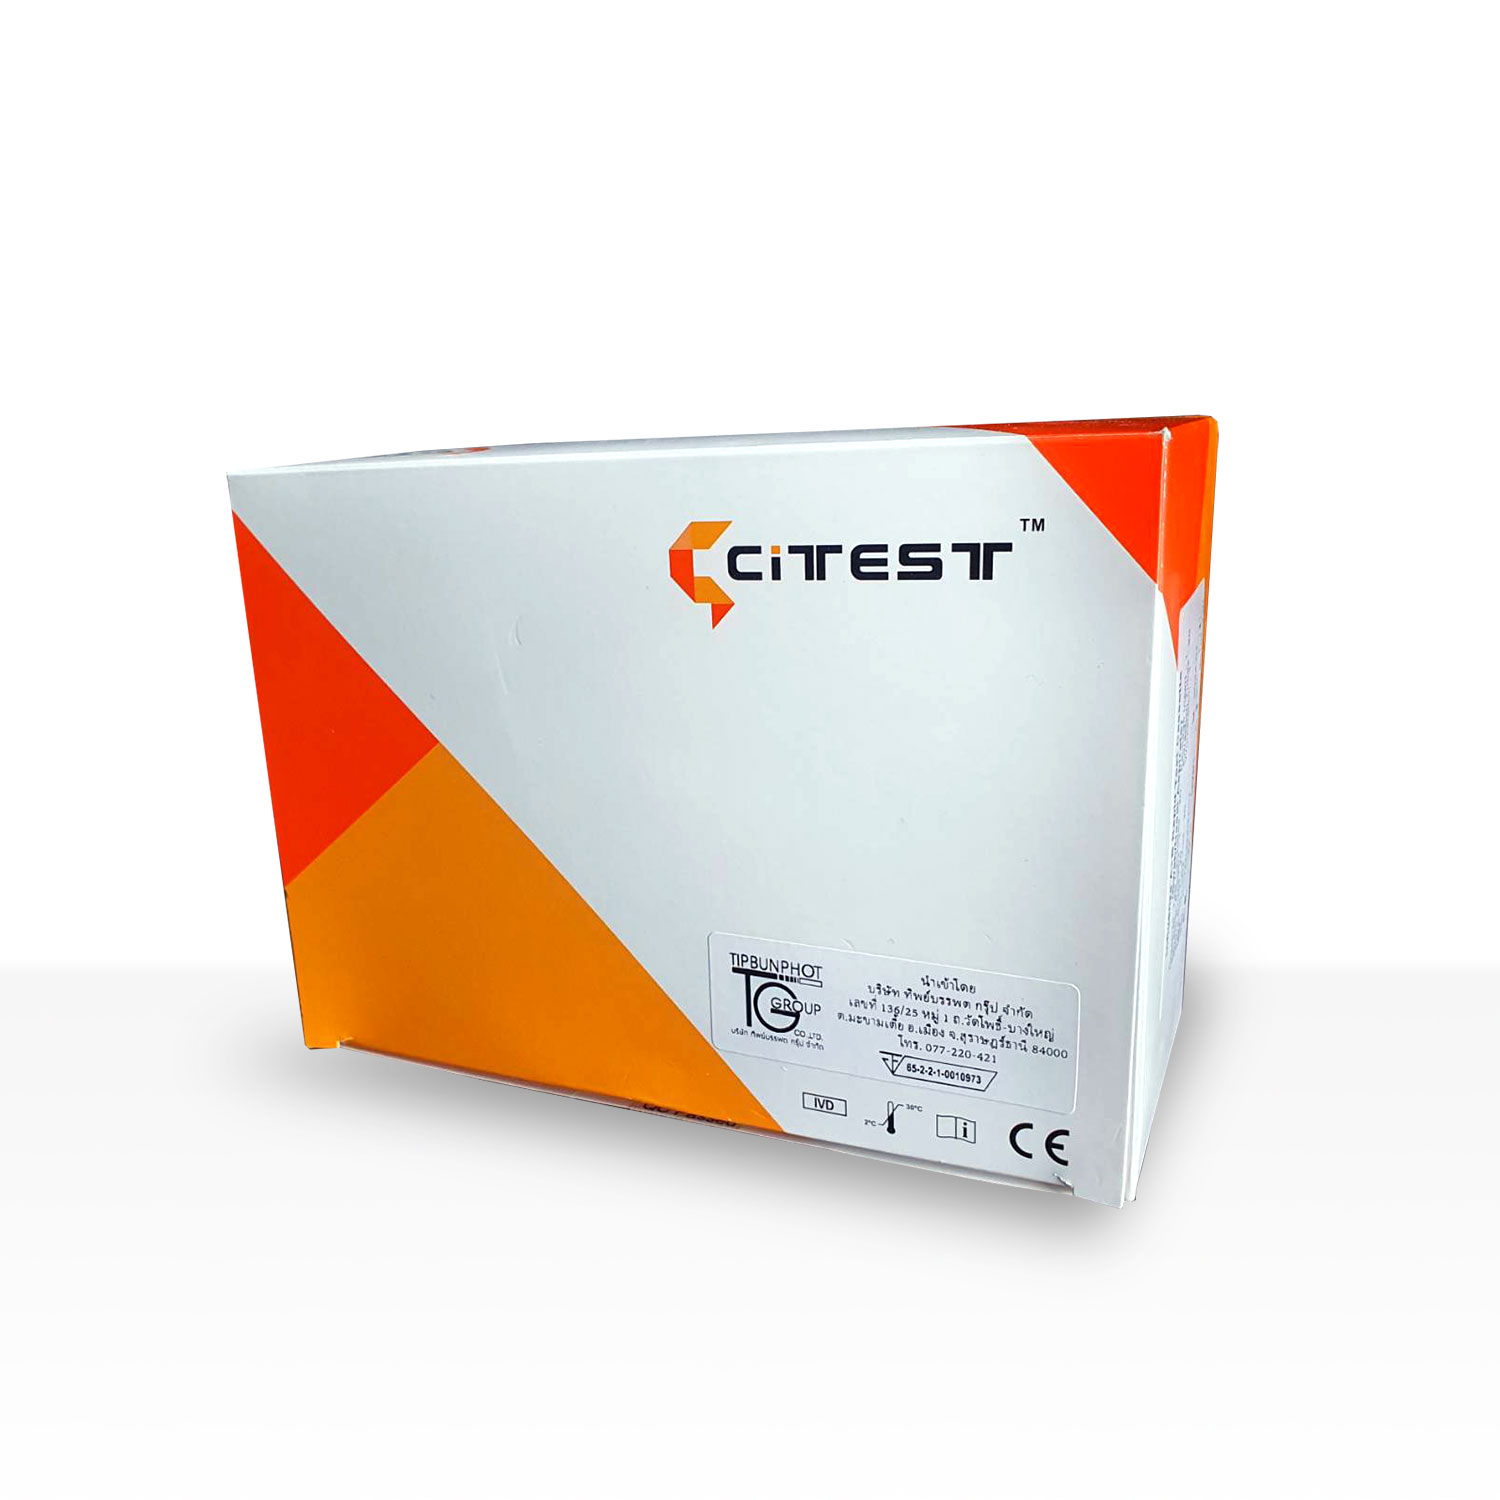 CITEST HBsAb Rapid Test (Cassette)